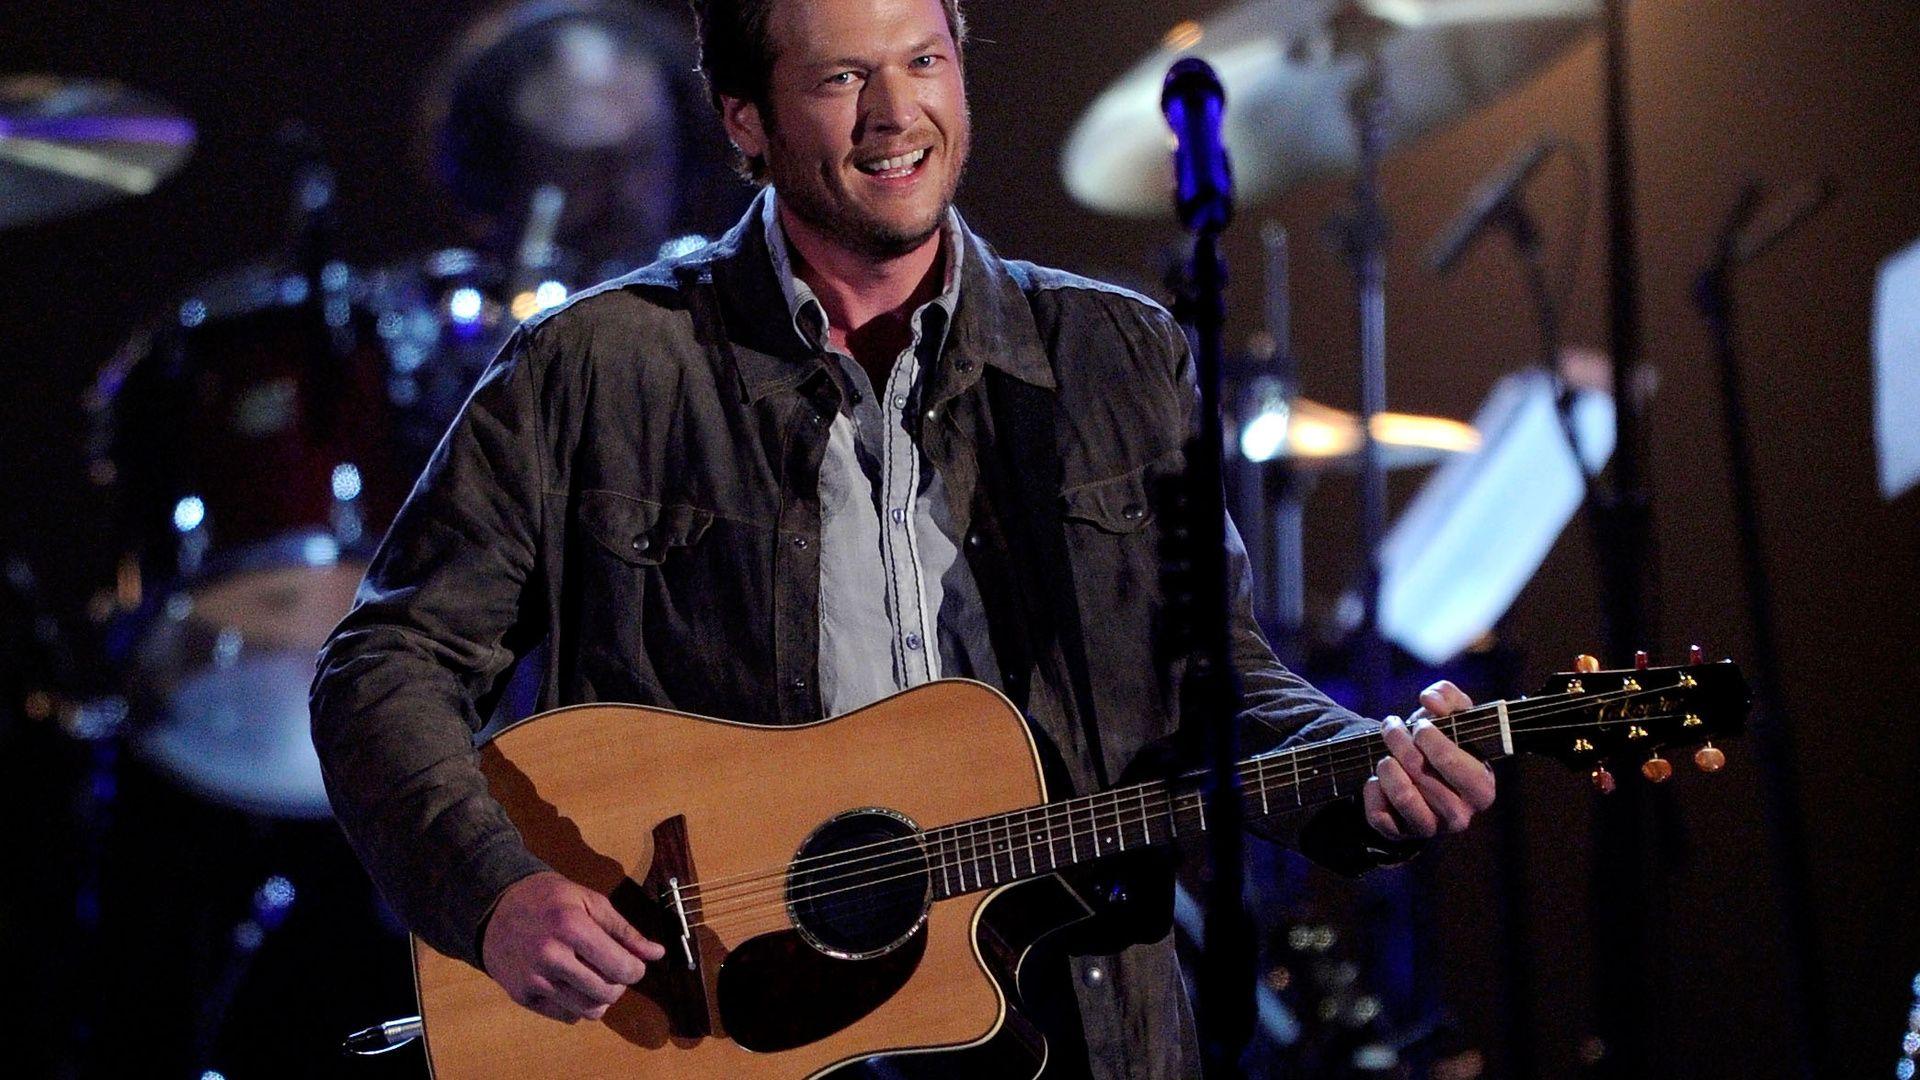 Blake Shelton, American Singer, Country Music, Guitar